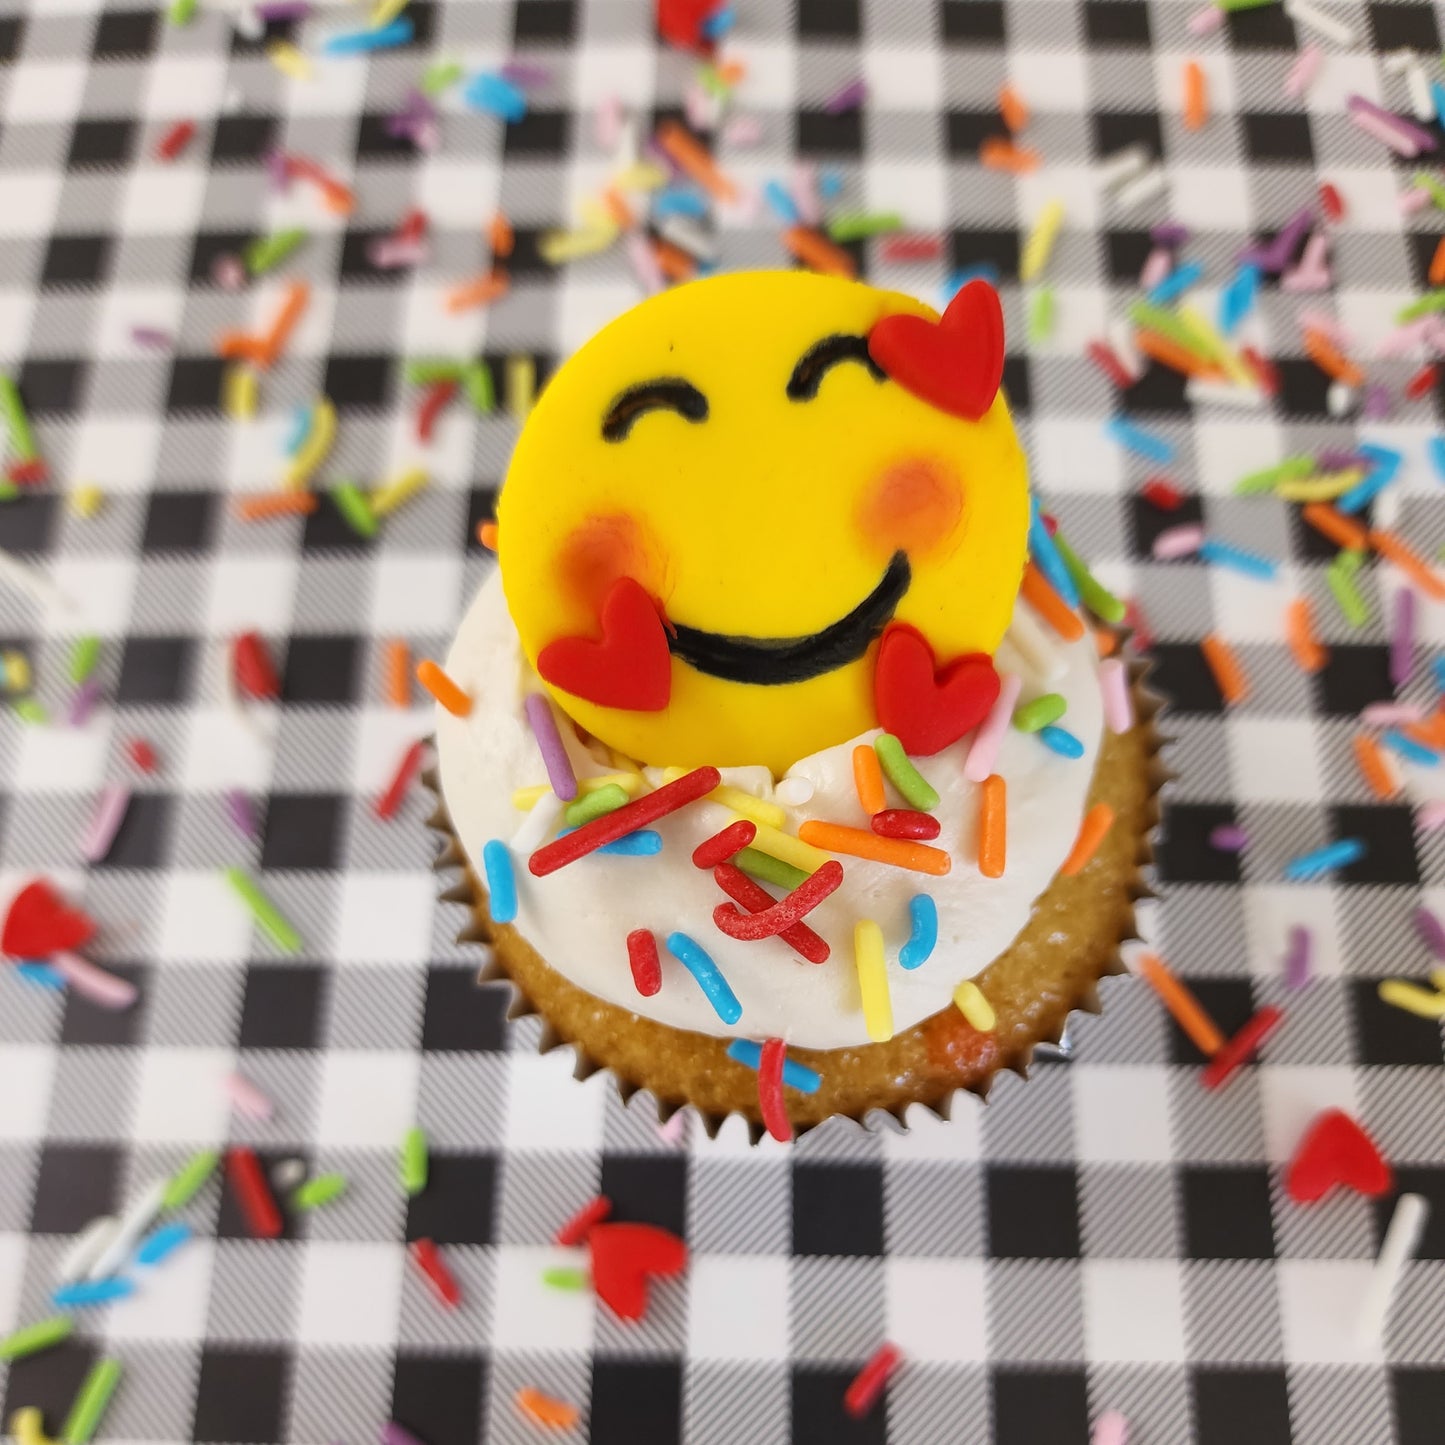 One emoji DIY cupcake from DIY decorating kit. Grateful, thankful, bashful emoji.